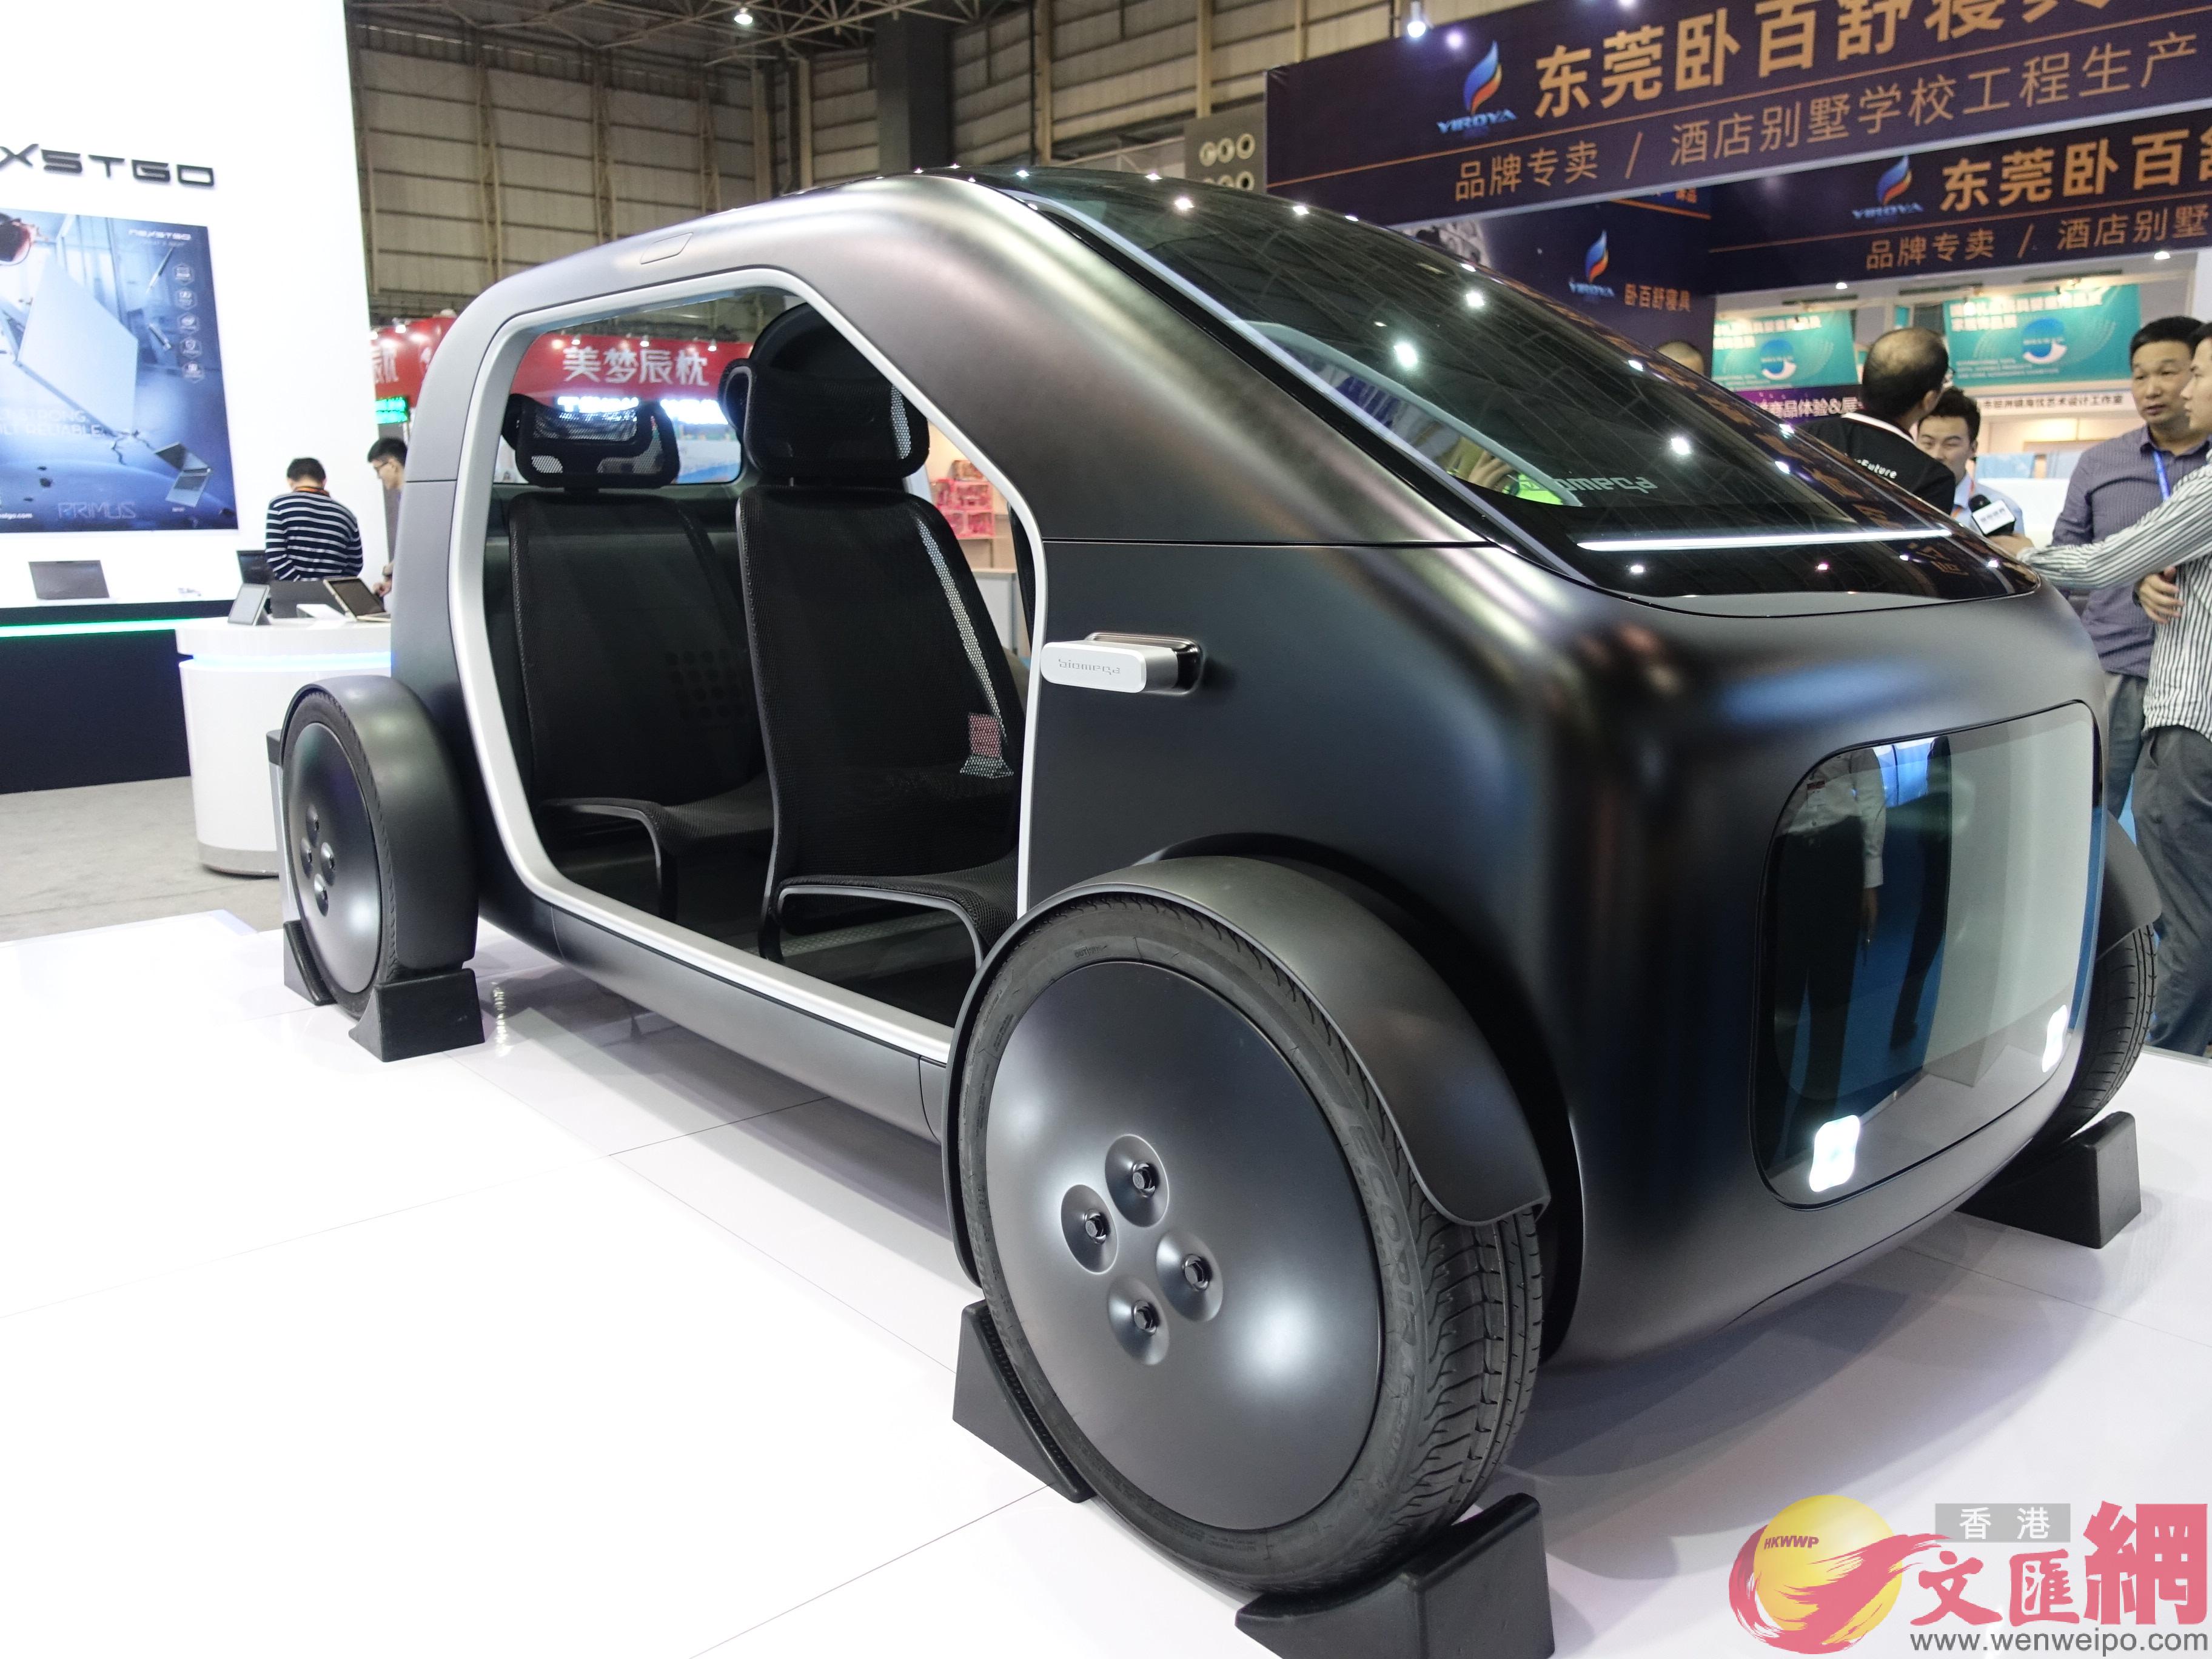 加博會上展出了不少來自大灣區的u黑科技v產品C圖為香港企業研發的碳纖維汽車C]盧靜怡攝^